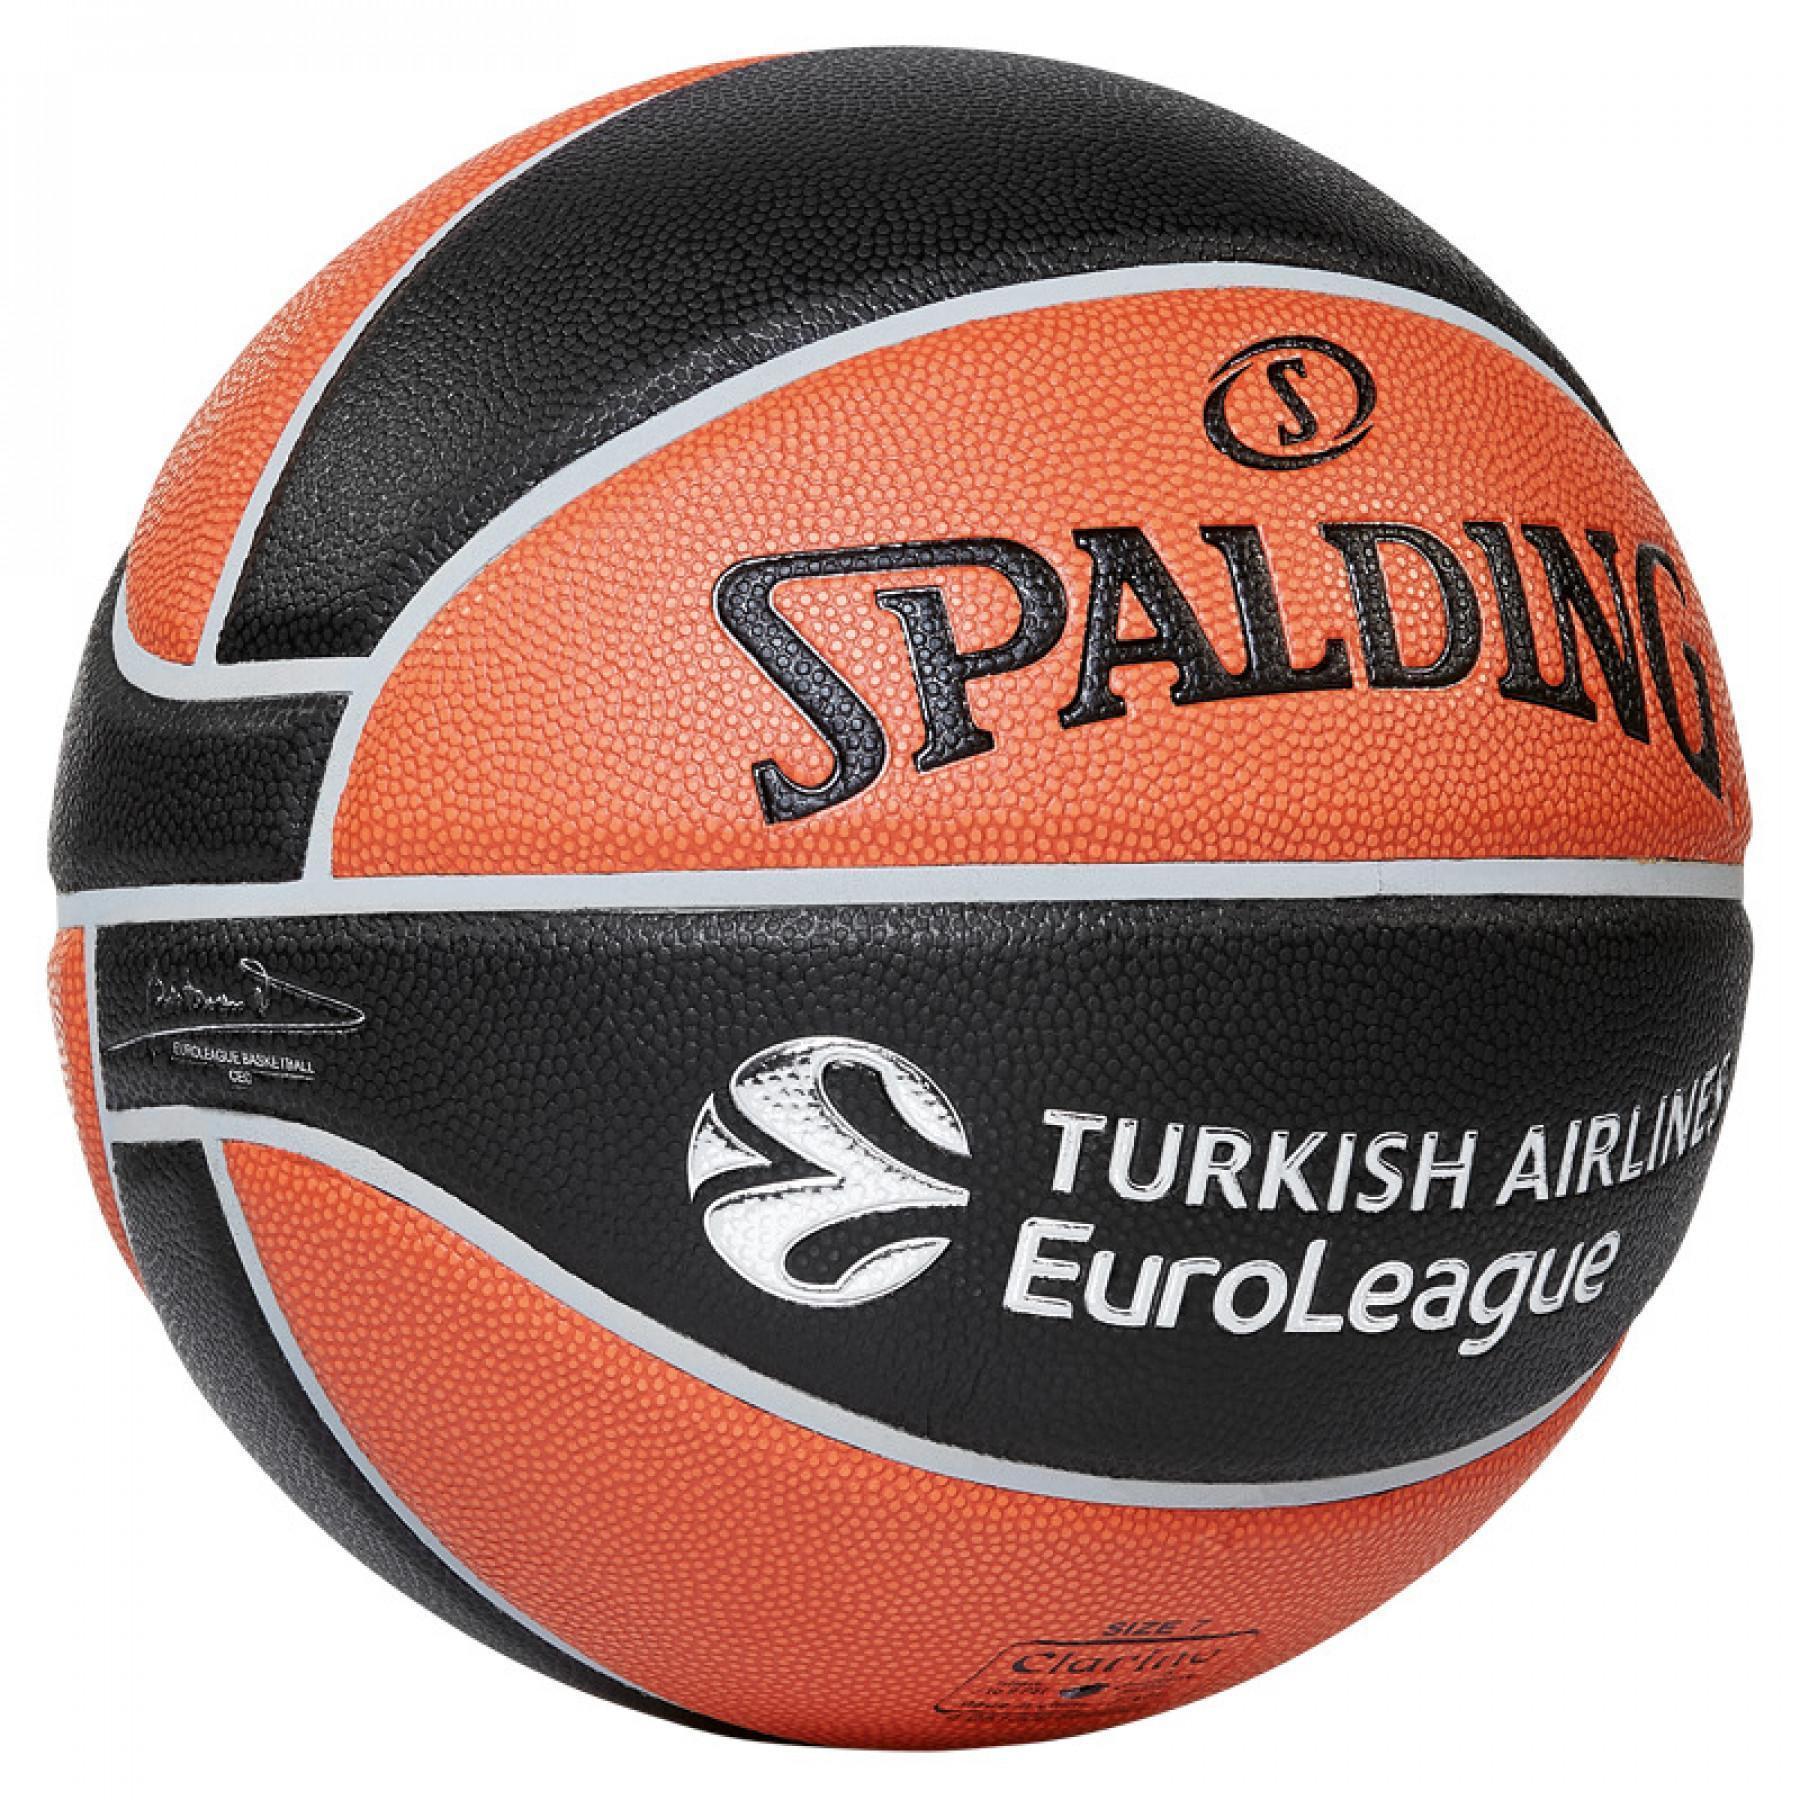 Ballon Spalding Euroleague Tf1000 Legacy (84-004z)